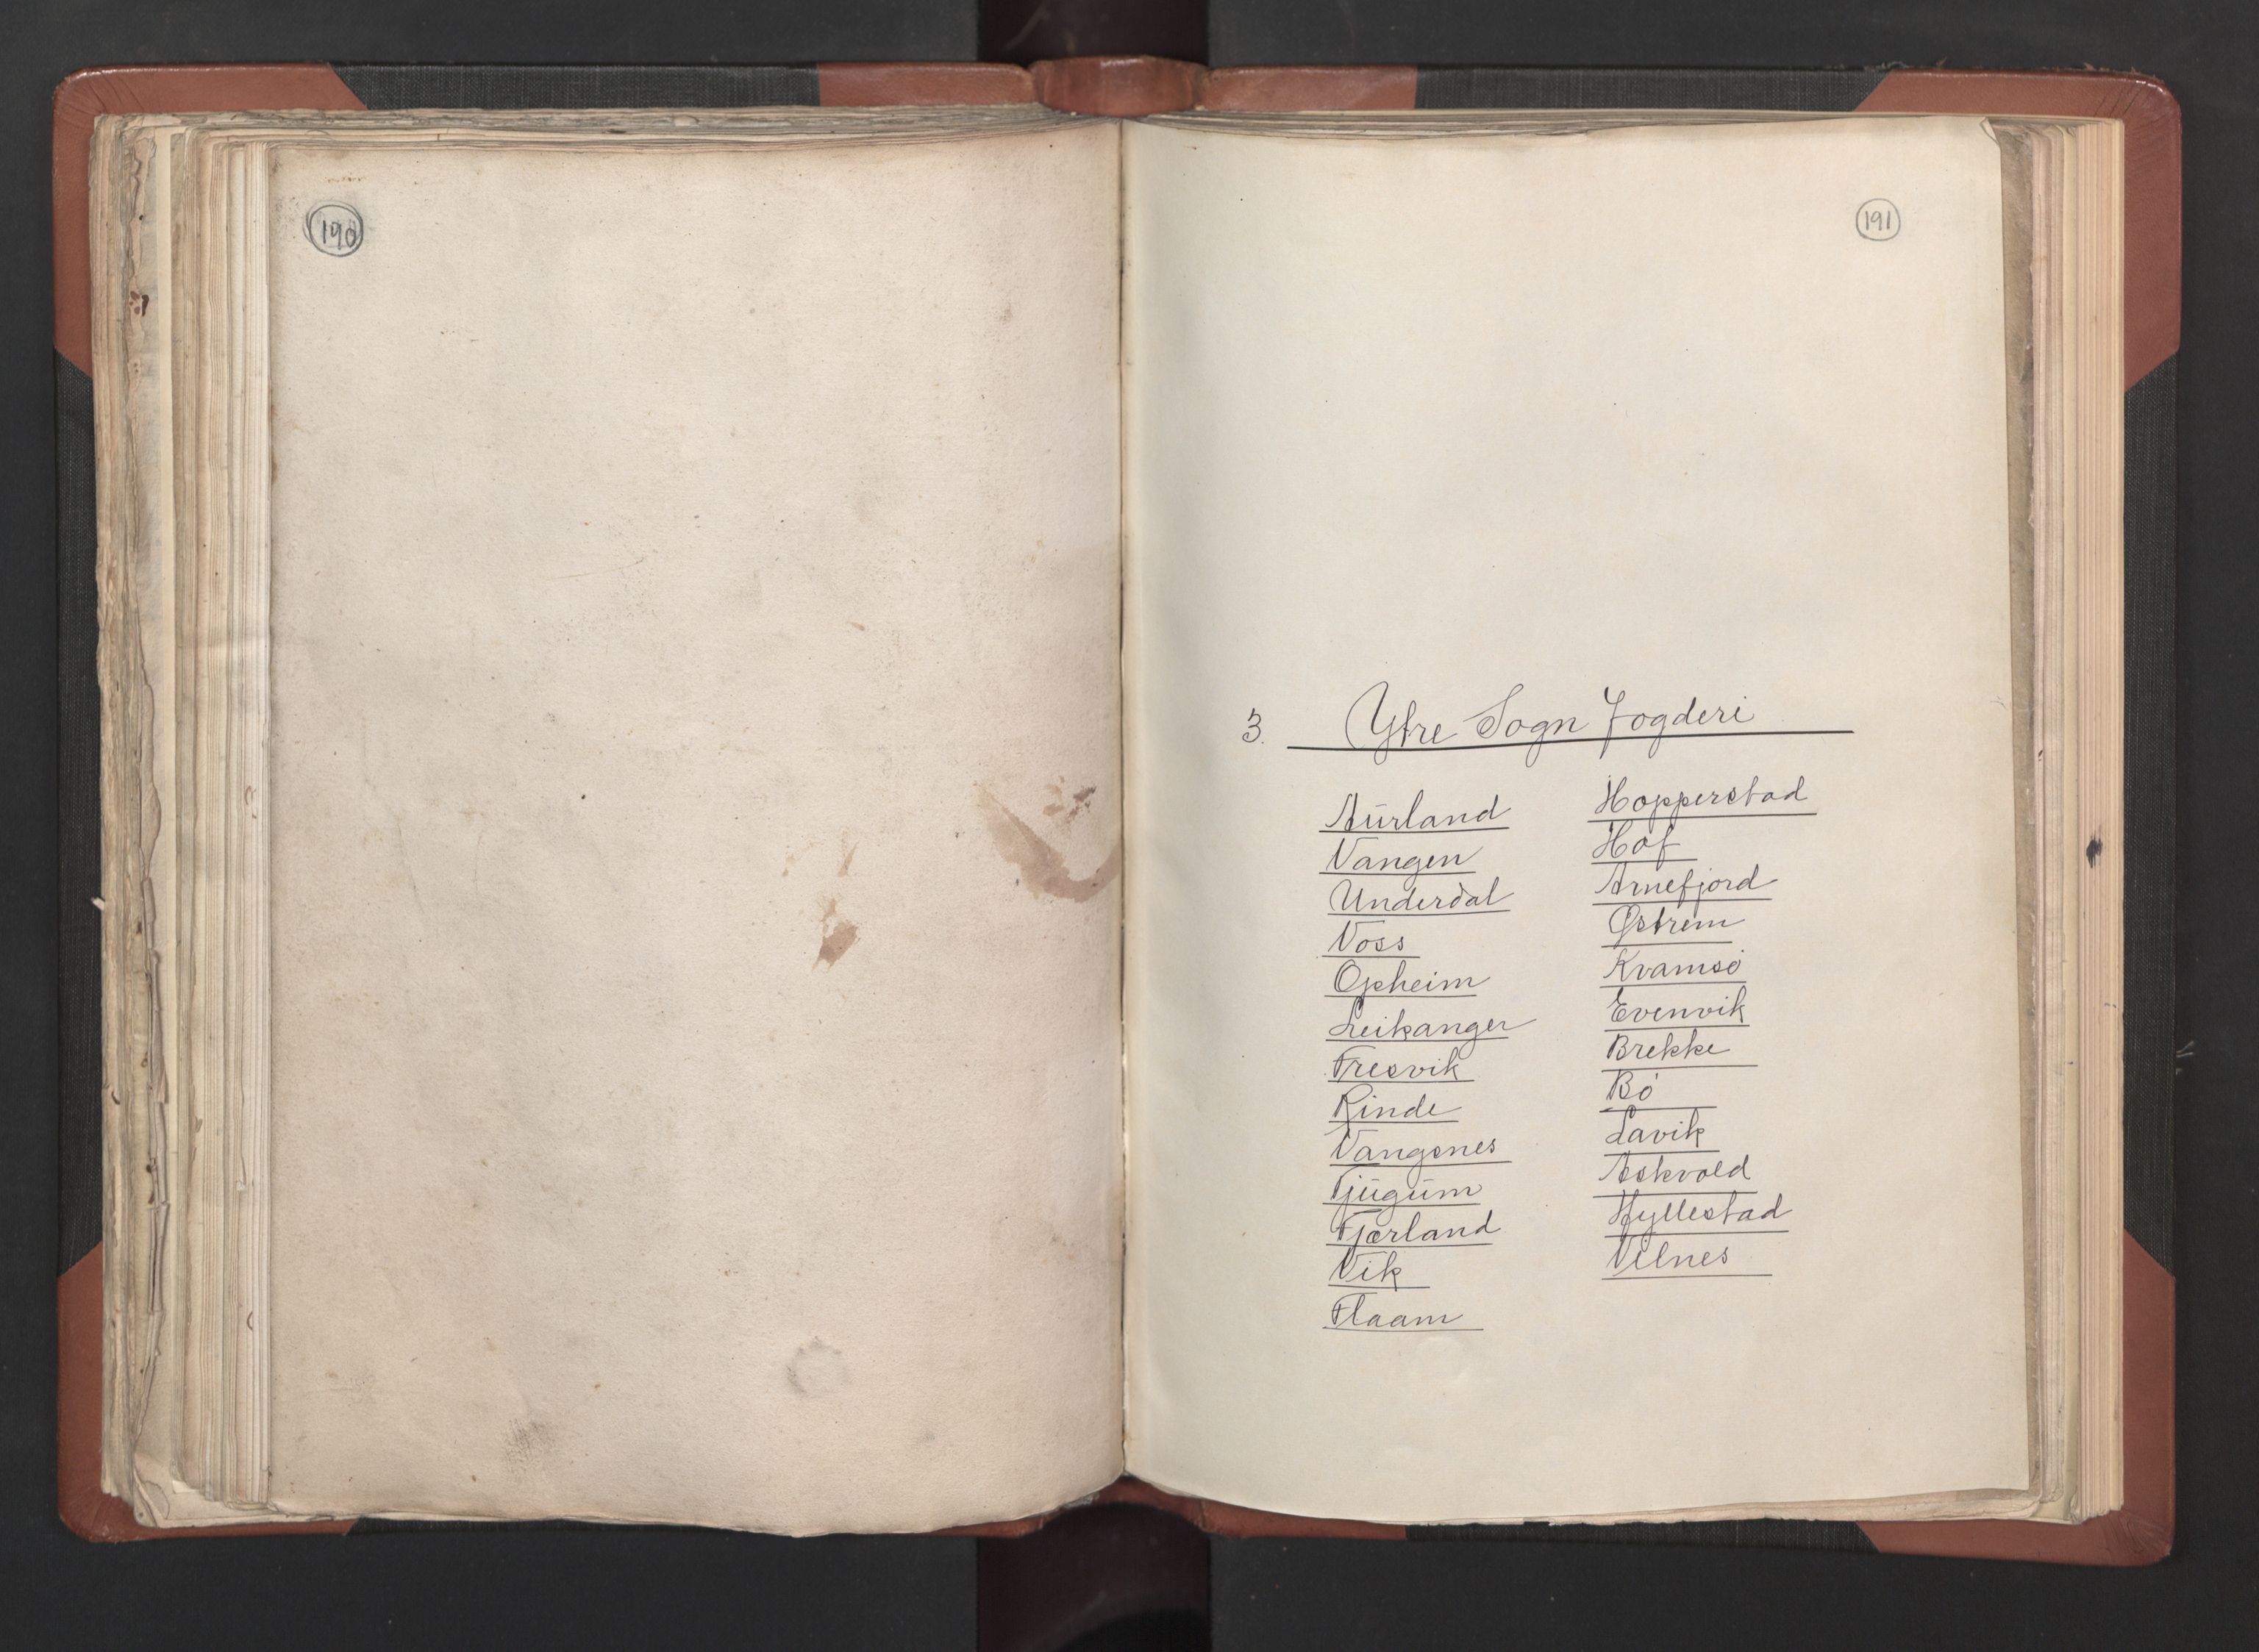 RA, Bailiff's Census 1664-1666, no. 14: Hardanger len, Ytre Sogn fogderi and Indre Sogn fogderi, 1664-1665, p. 190-191